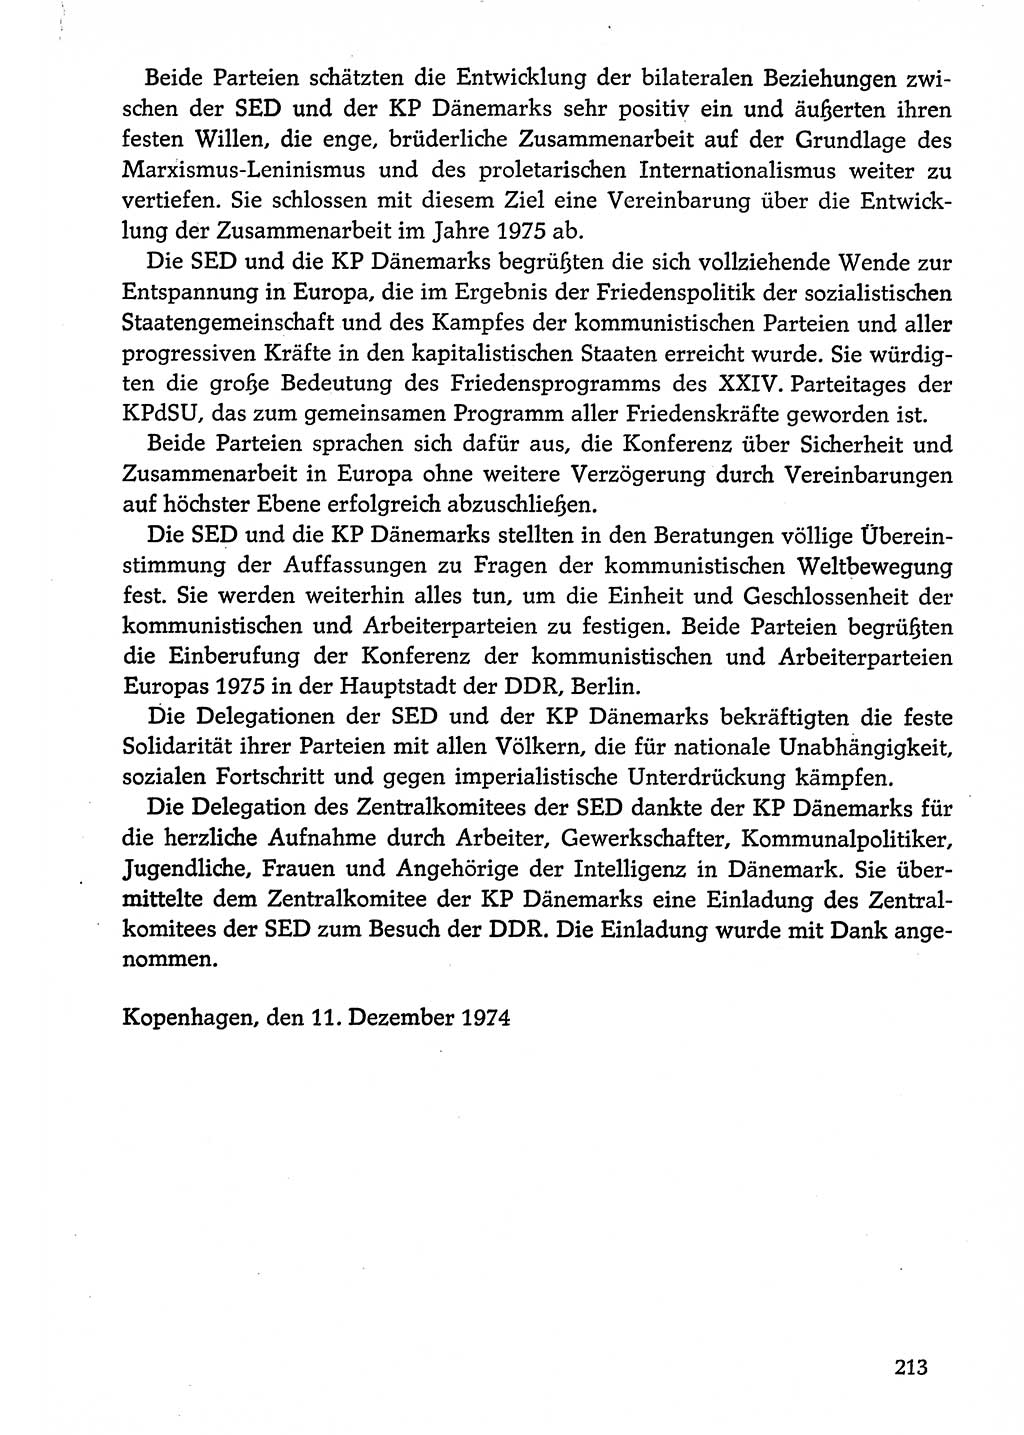 Dokumente der Sozialistischen Einheitspartei Deutschlands (SED) [Deutsche Demokratische Republik (DDR)] 1974-1975, Seite 213 (Dok. SED DDR 1978, Bd. ⅩⅤ, S. 213)